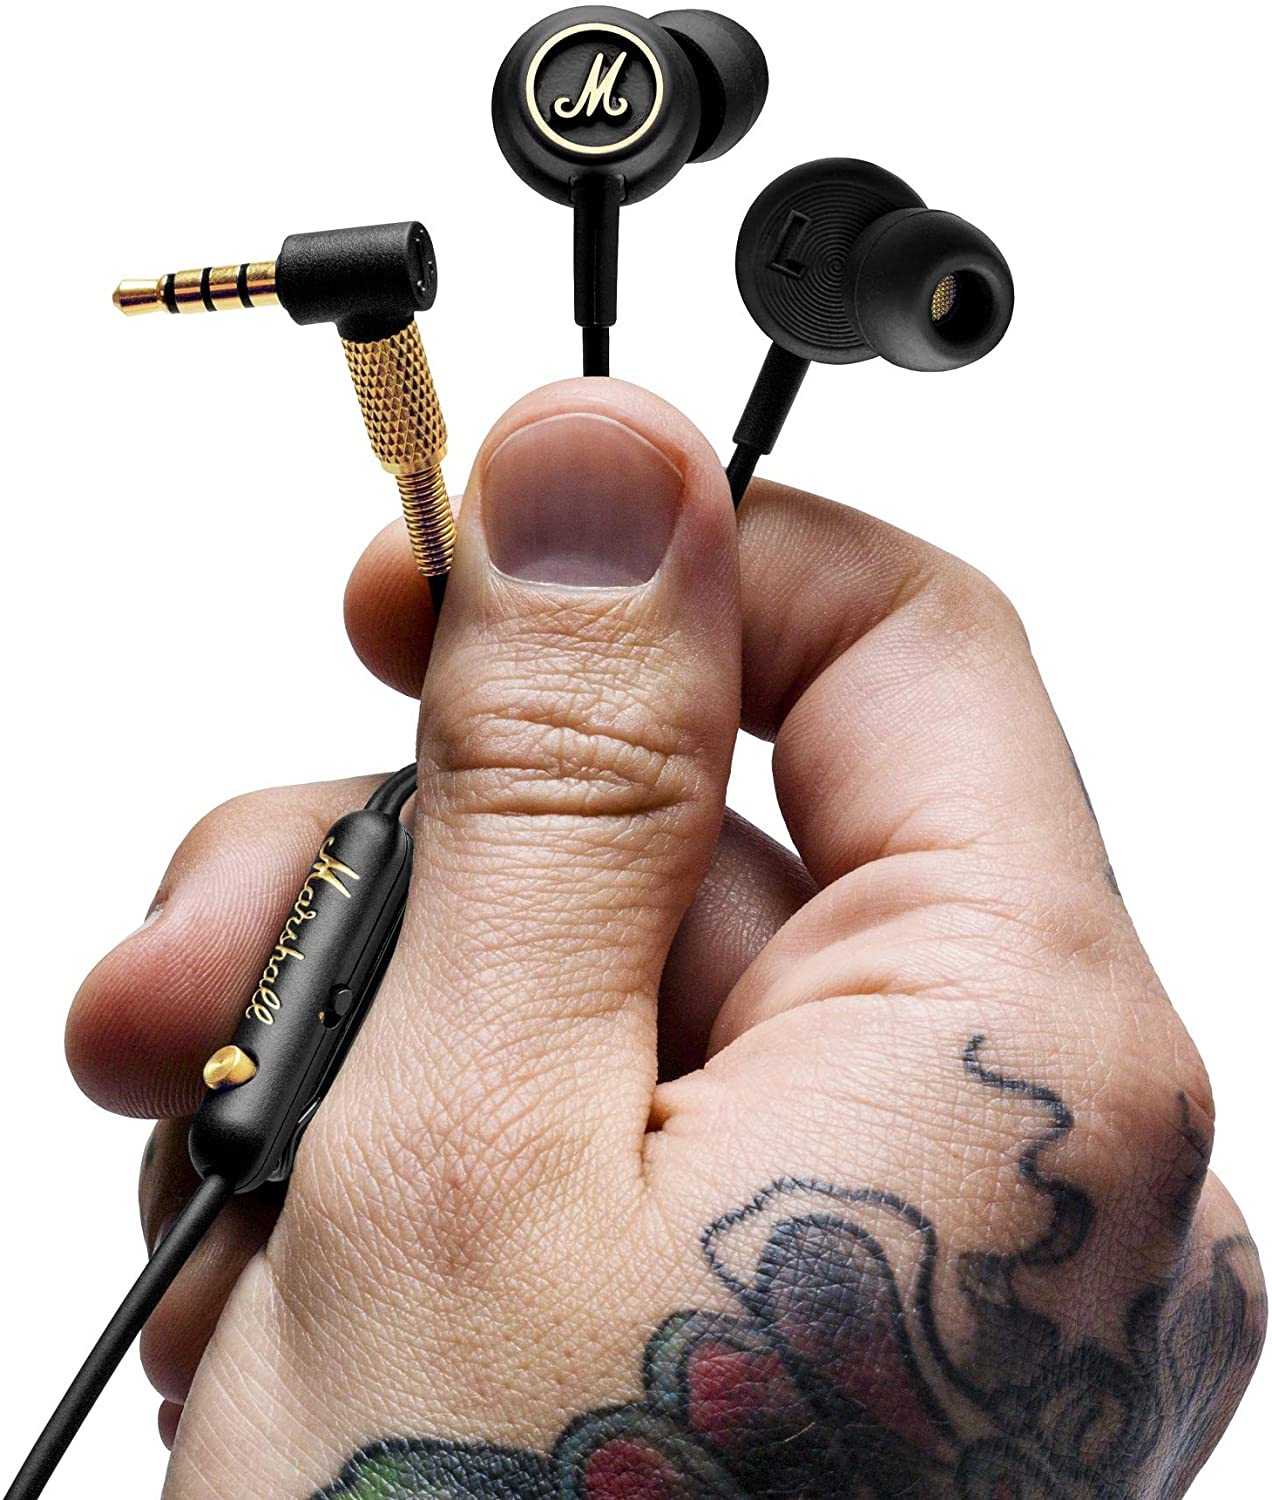 原廠正品 Marshall Mode EQ 入耳式耳機 可調整中低音頻 黑銅色 平輸 裸裝 一年店家保固